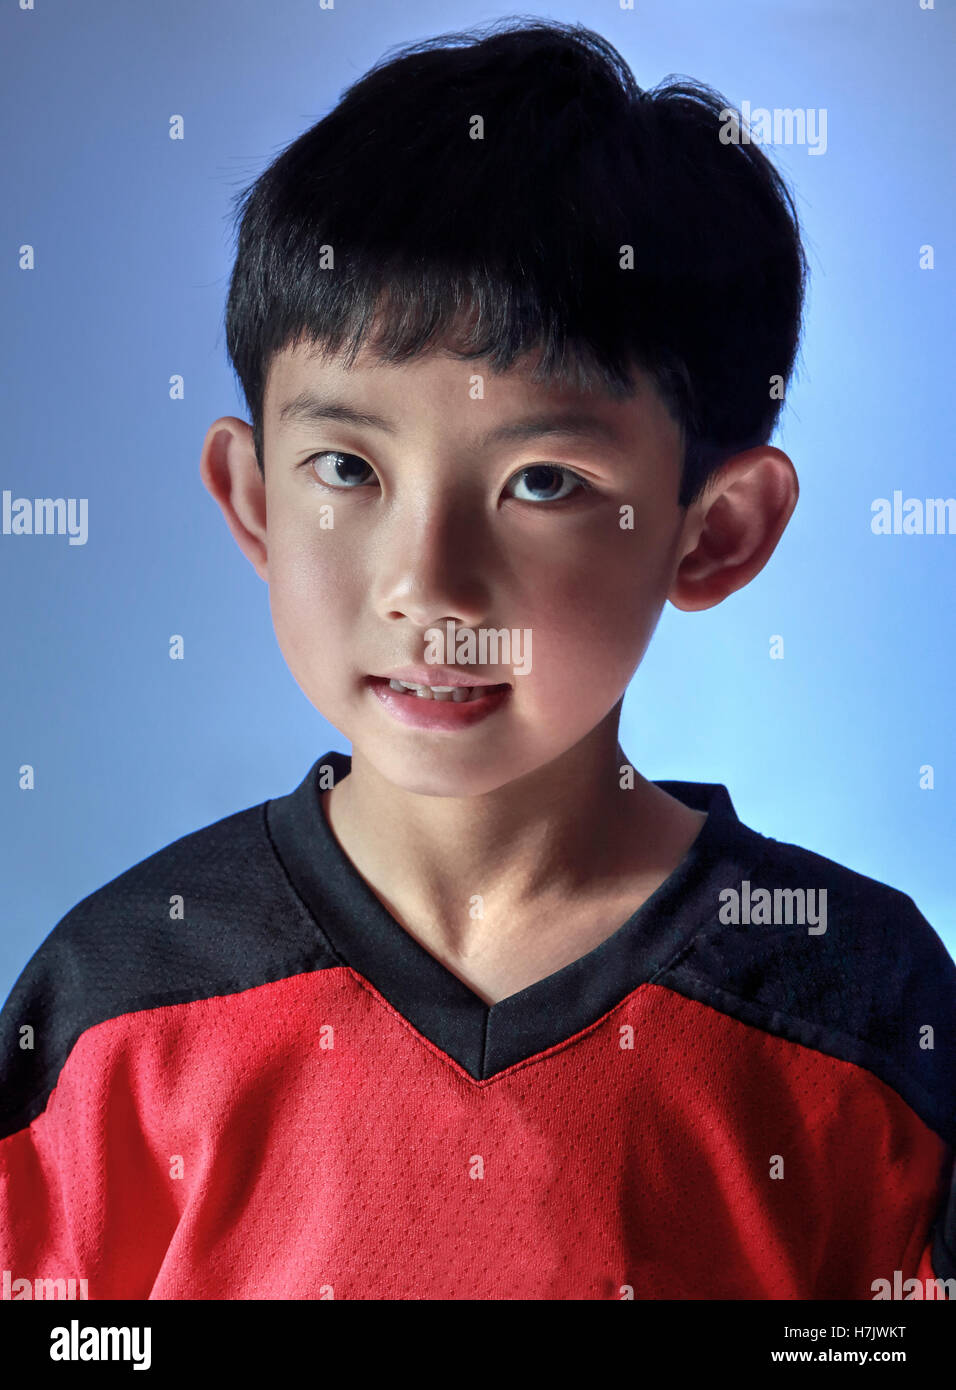 Ragazzo asiatico che indossa una maglia sportiva in posa di studio, con illuminazione speciale per un lato. Isolato su sfondo blu Foto Stock